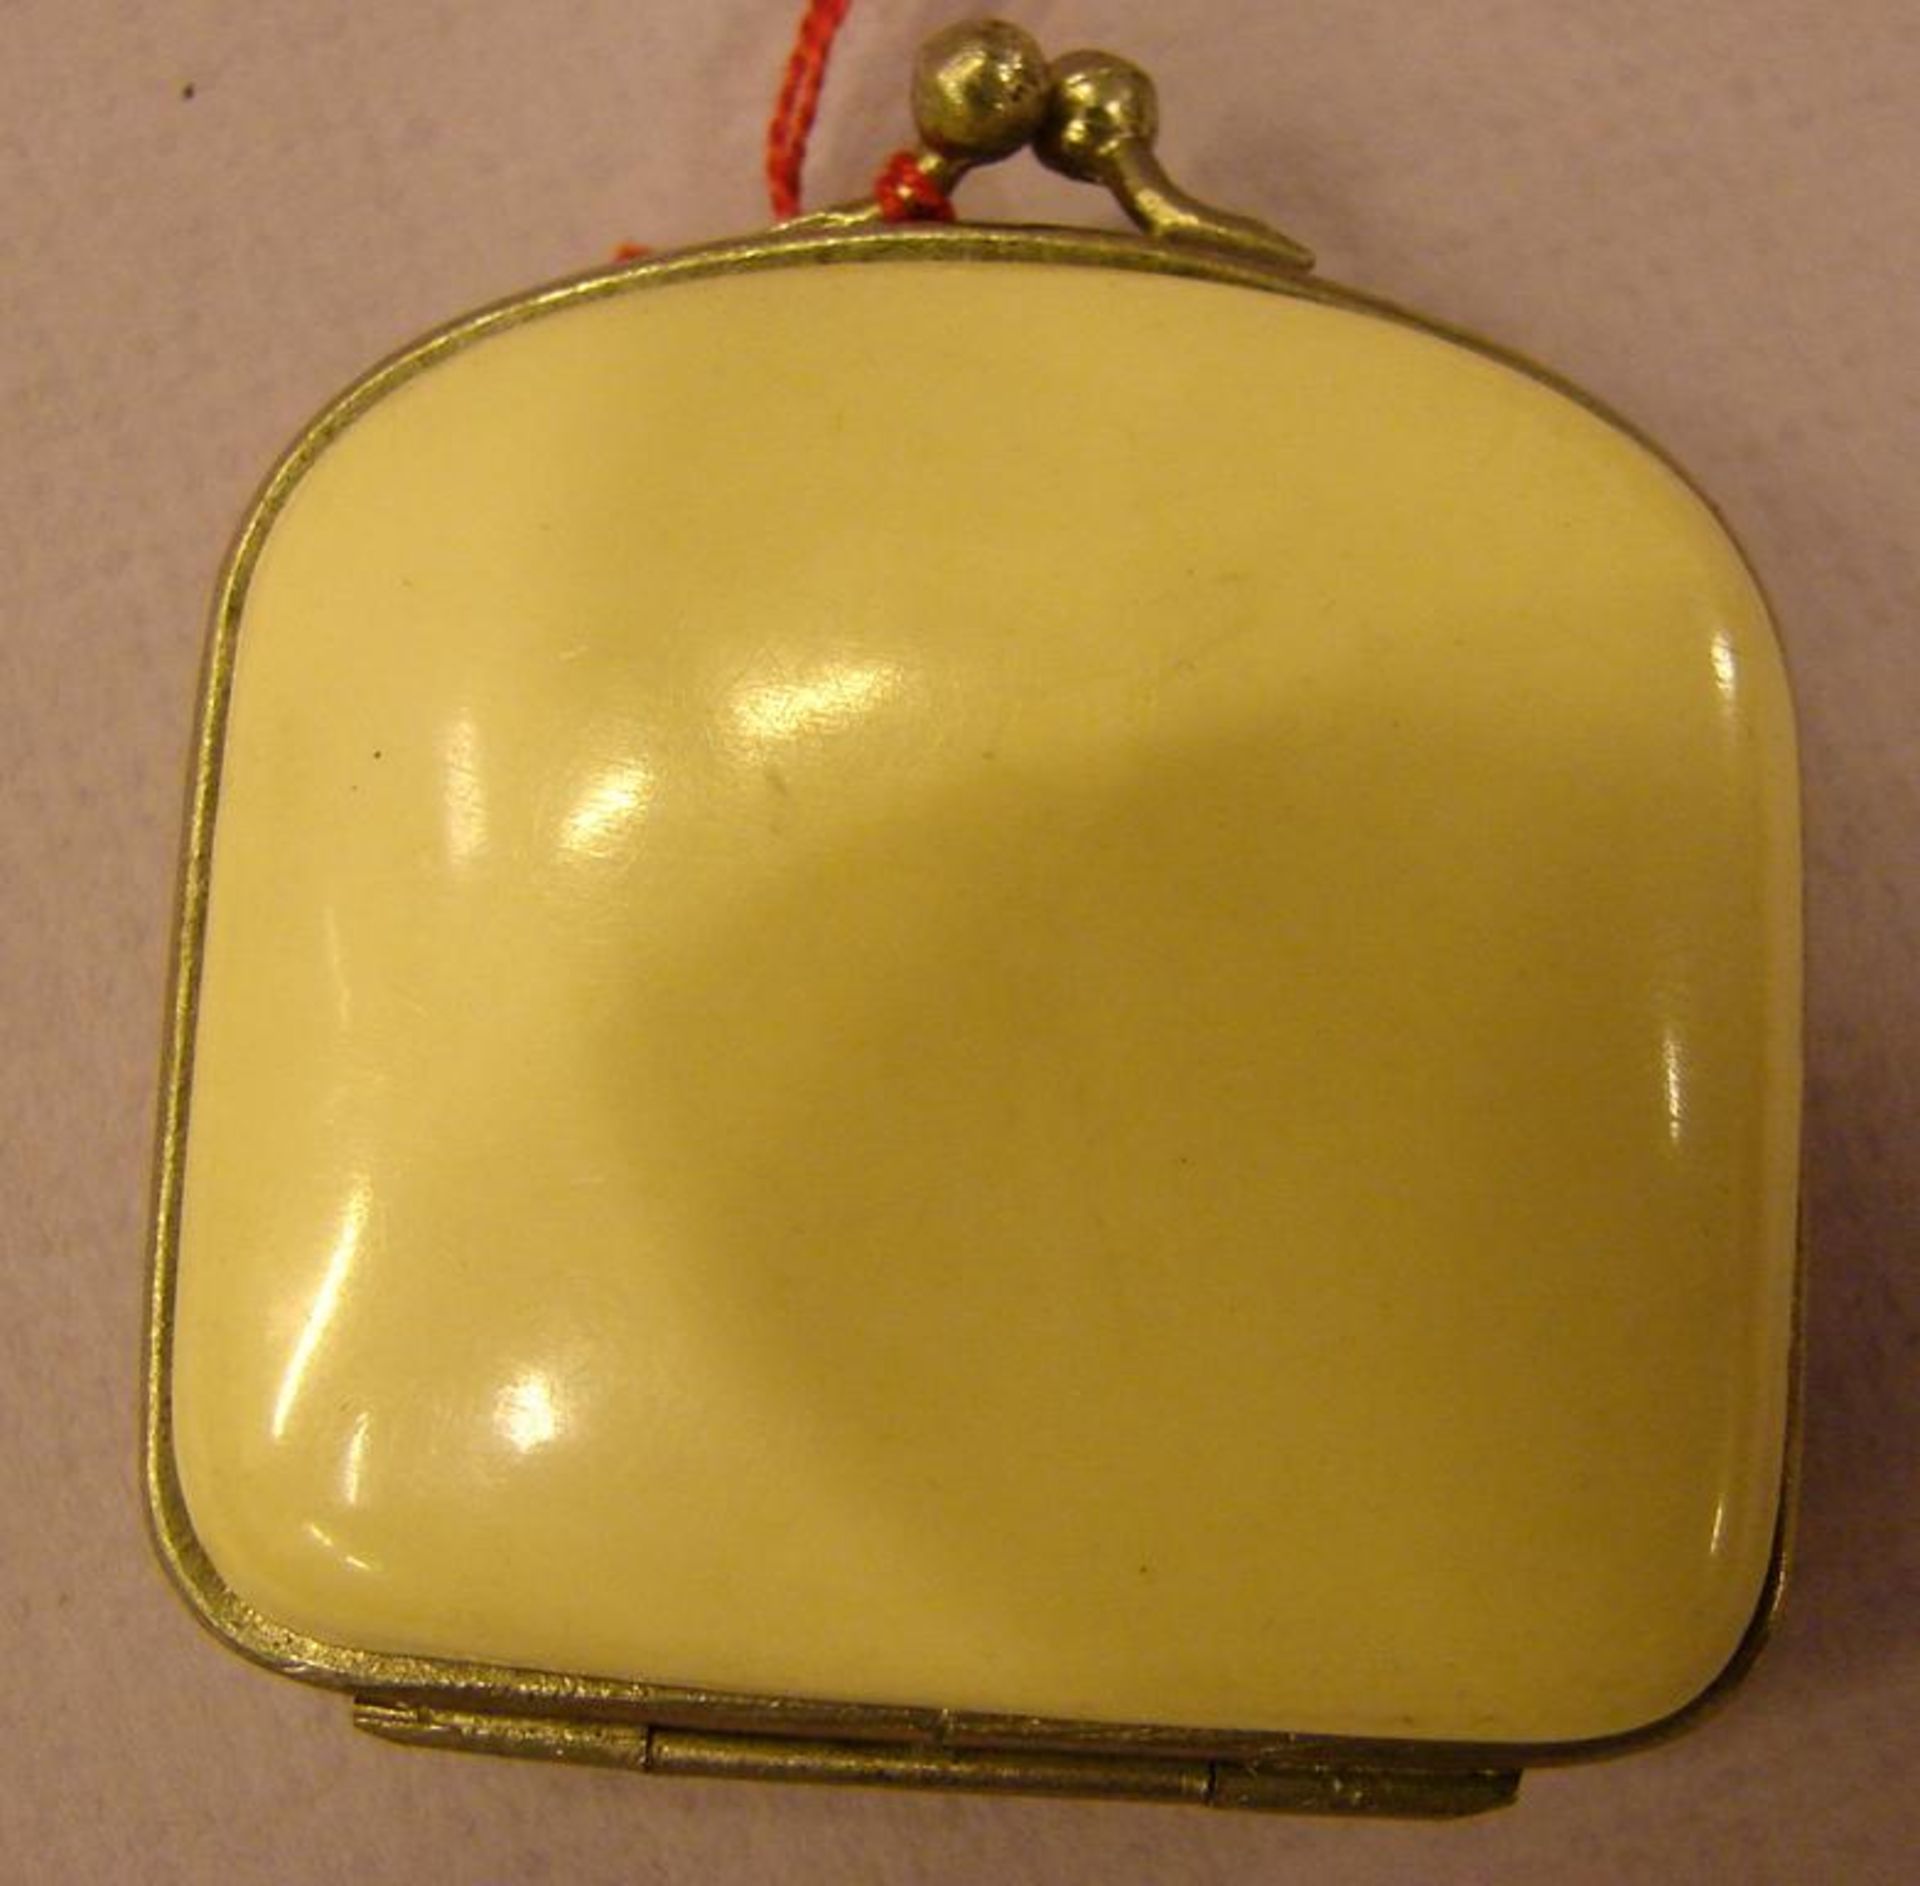 Kleine Tasche (Portemonnaie), Bein? mit Silbereinlegearbeit, Sottinnenleben, Klappverschluss,ca. 5 x - Bild 2 aus 4